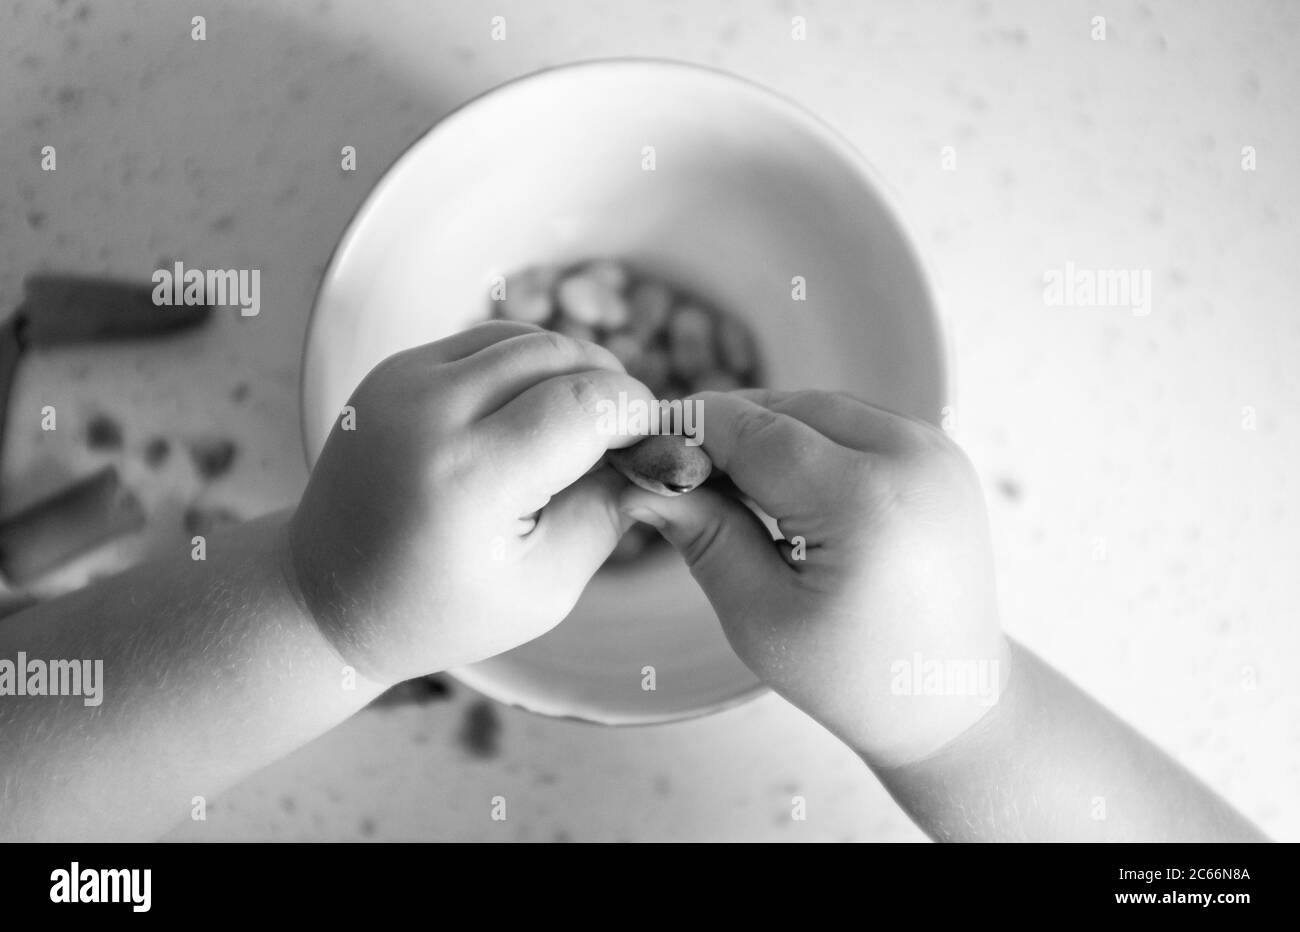 Jeune fille de 3 ans, putain de haricots fraîchement cueillis à la maison - Vicia faba - prêt à cuisiner Photographie prise par Simon Dack Banque D'Images